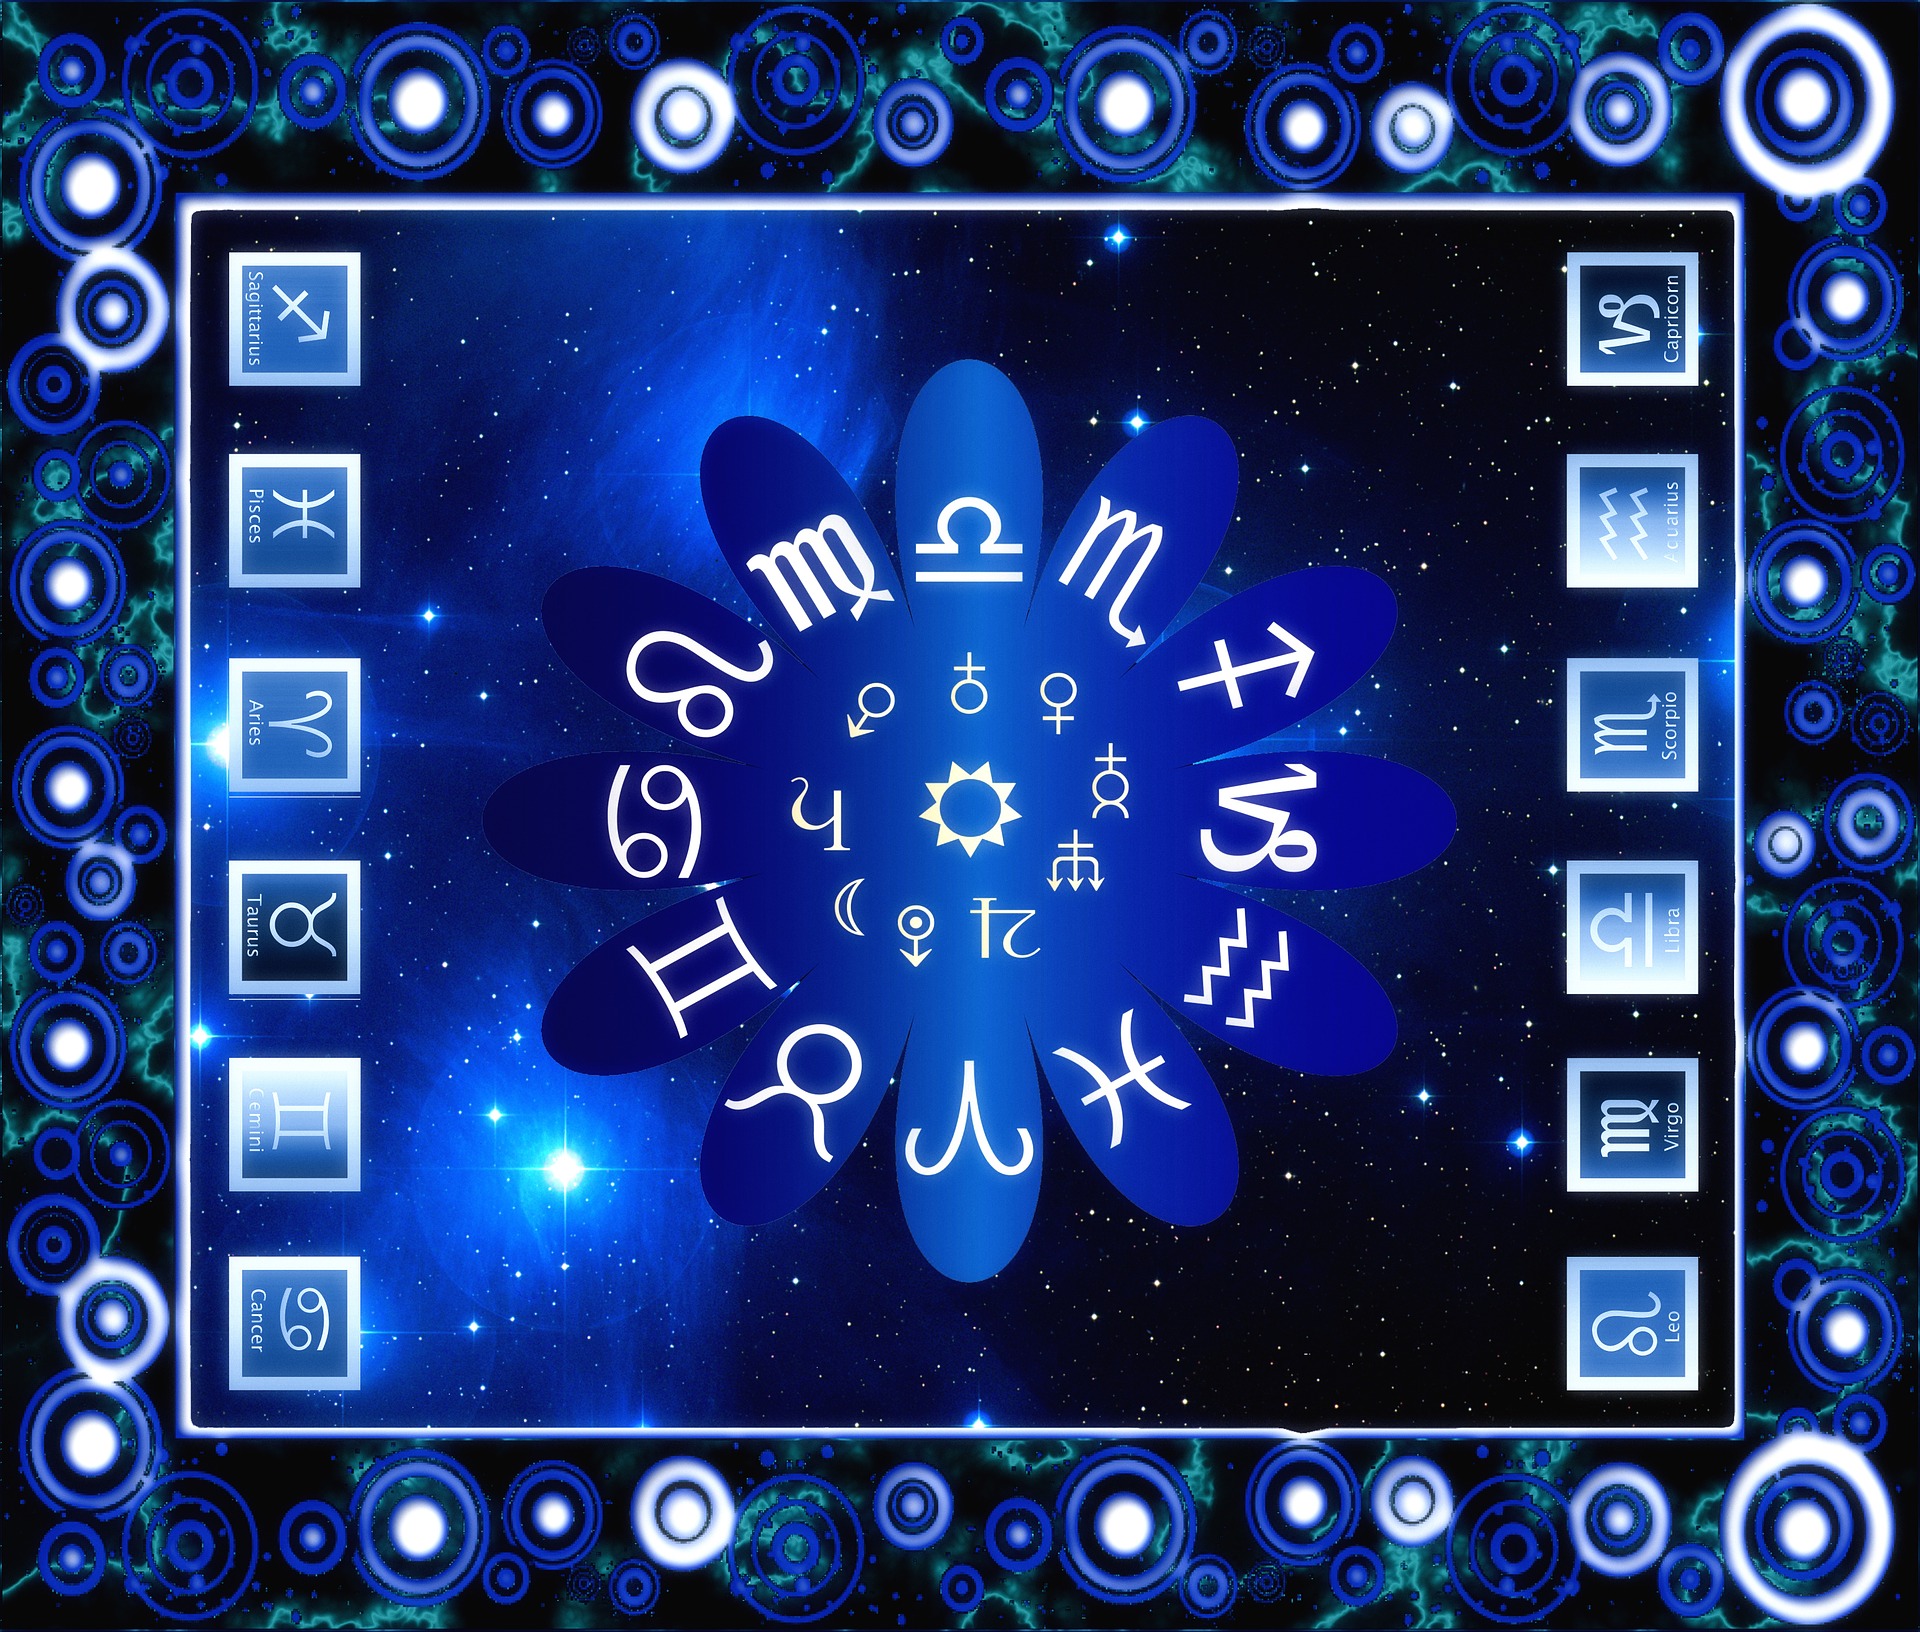 Astrologie 12 Sternzeichen Zodiac Tierkreiszeichen Sonnenzeichen Mondzeichen Astro Sterne.jpg